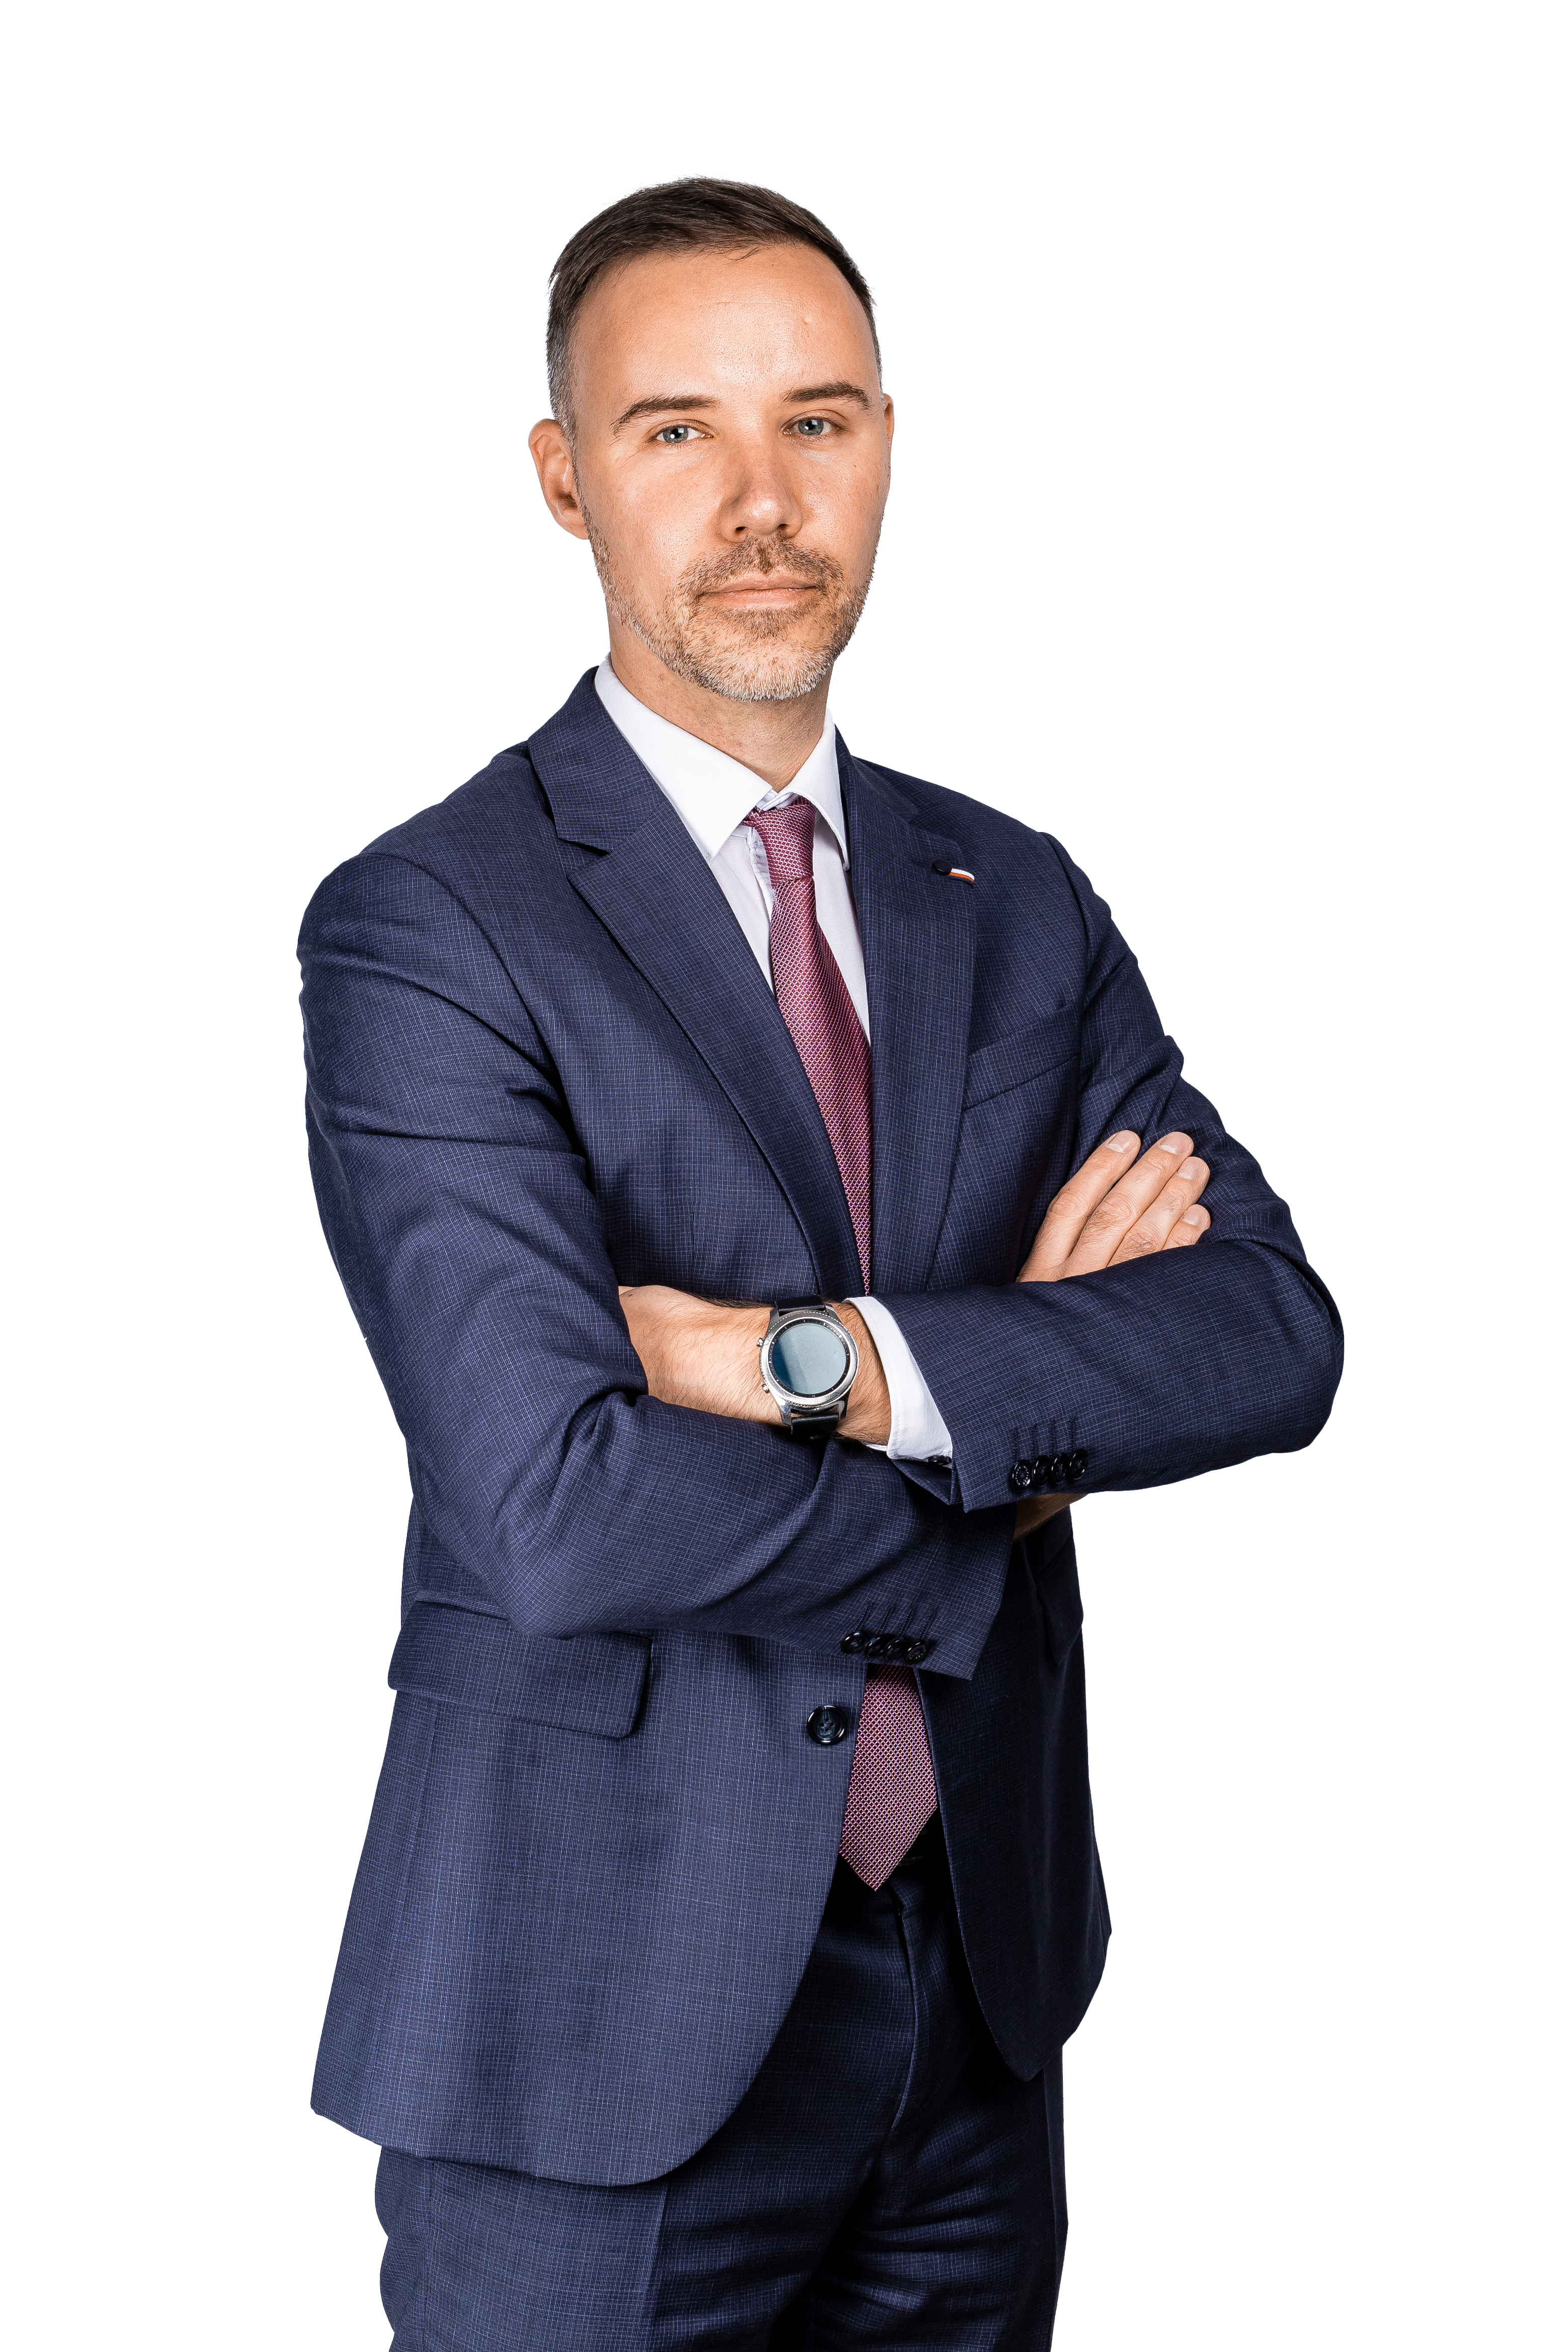 Jānis Ozoliņš Leinonen Head of Tax & Legal